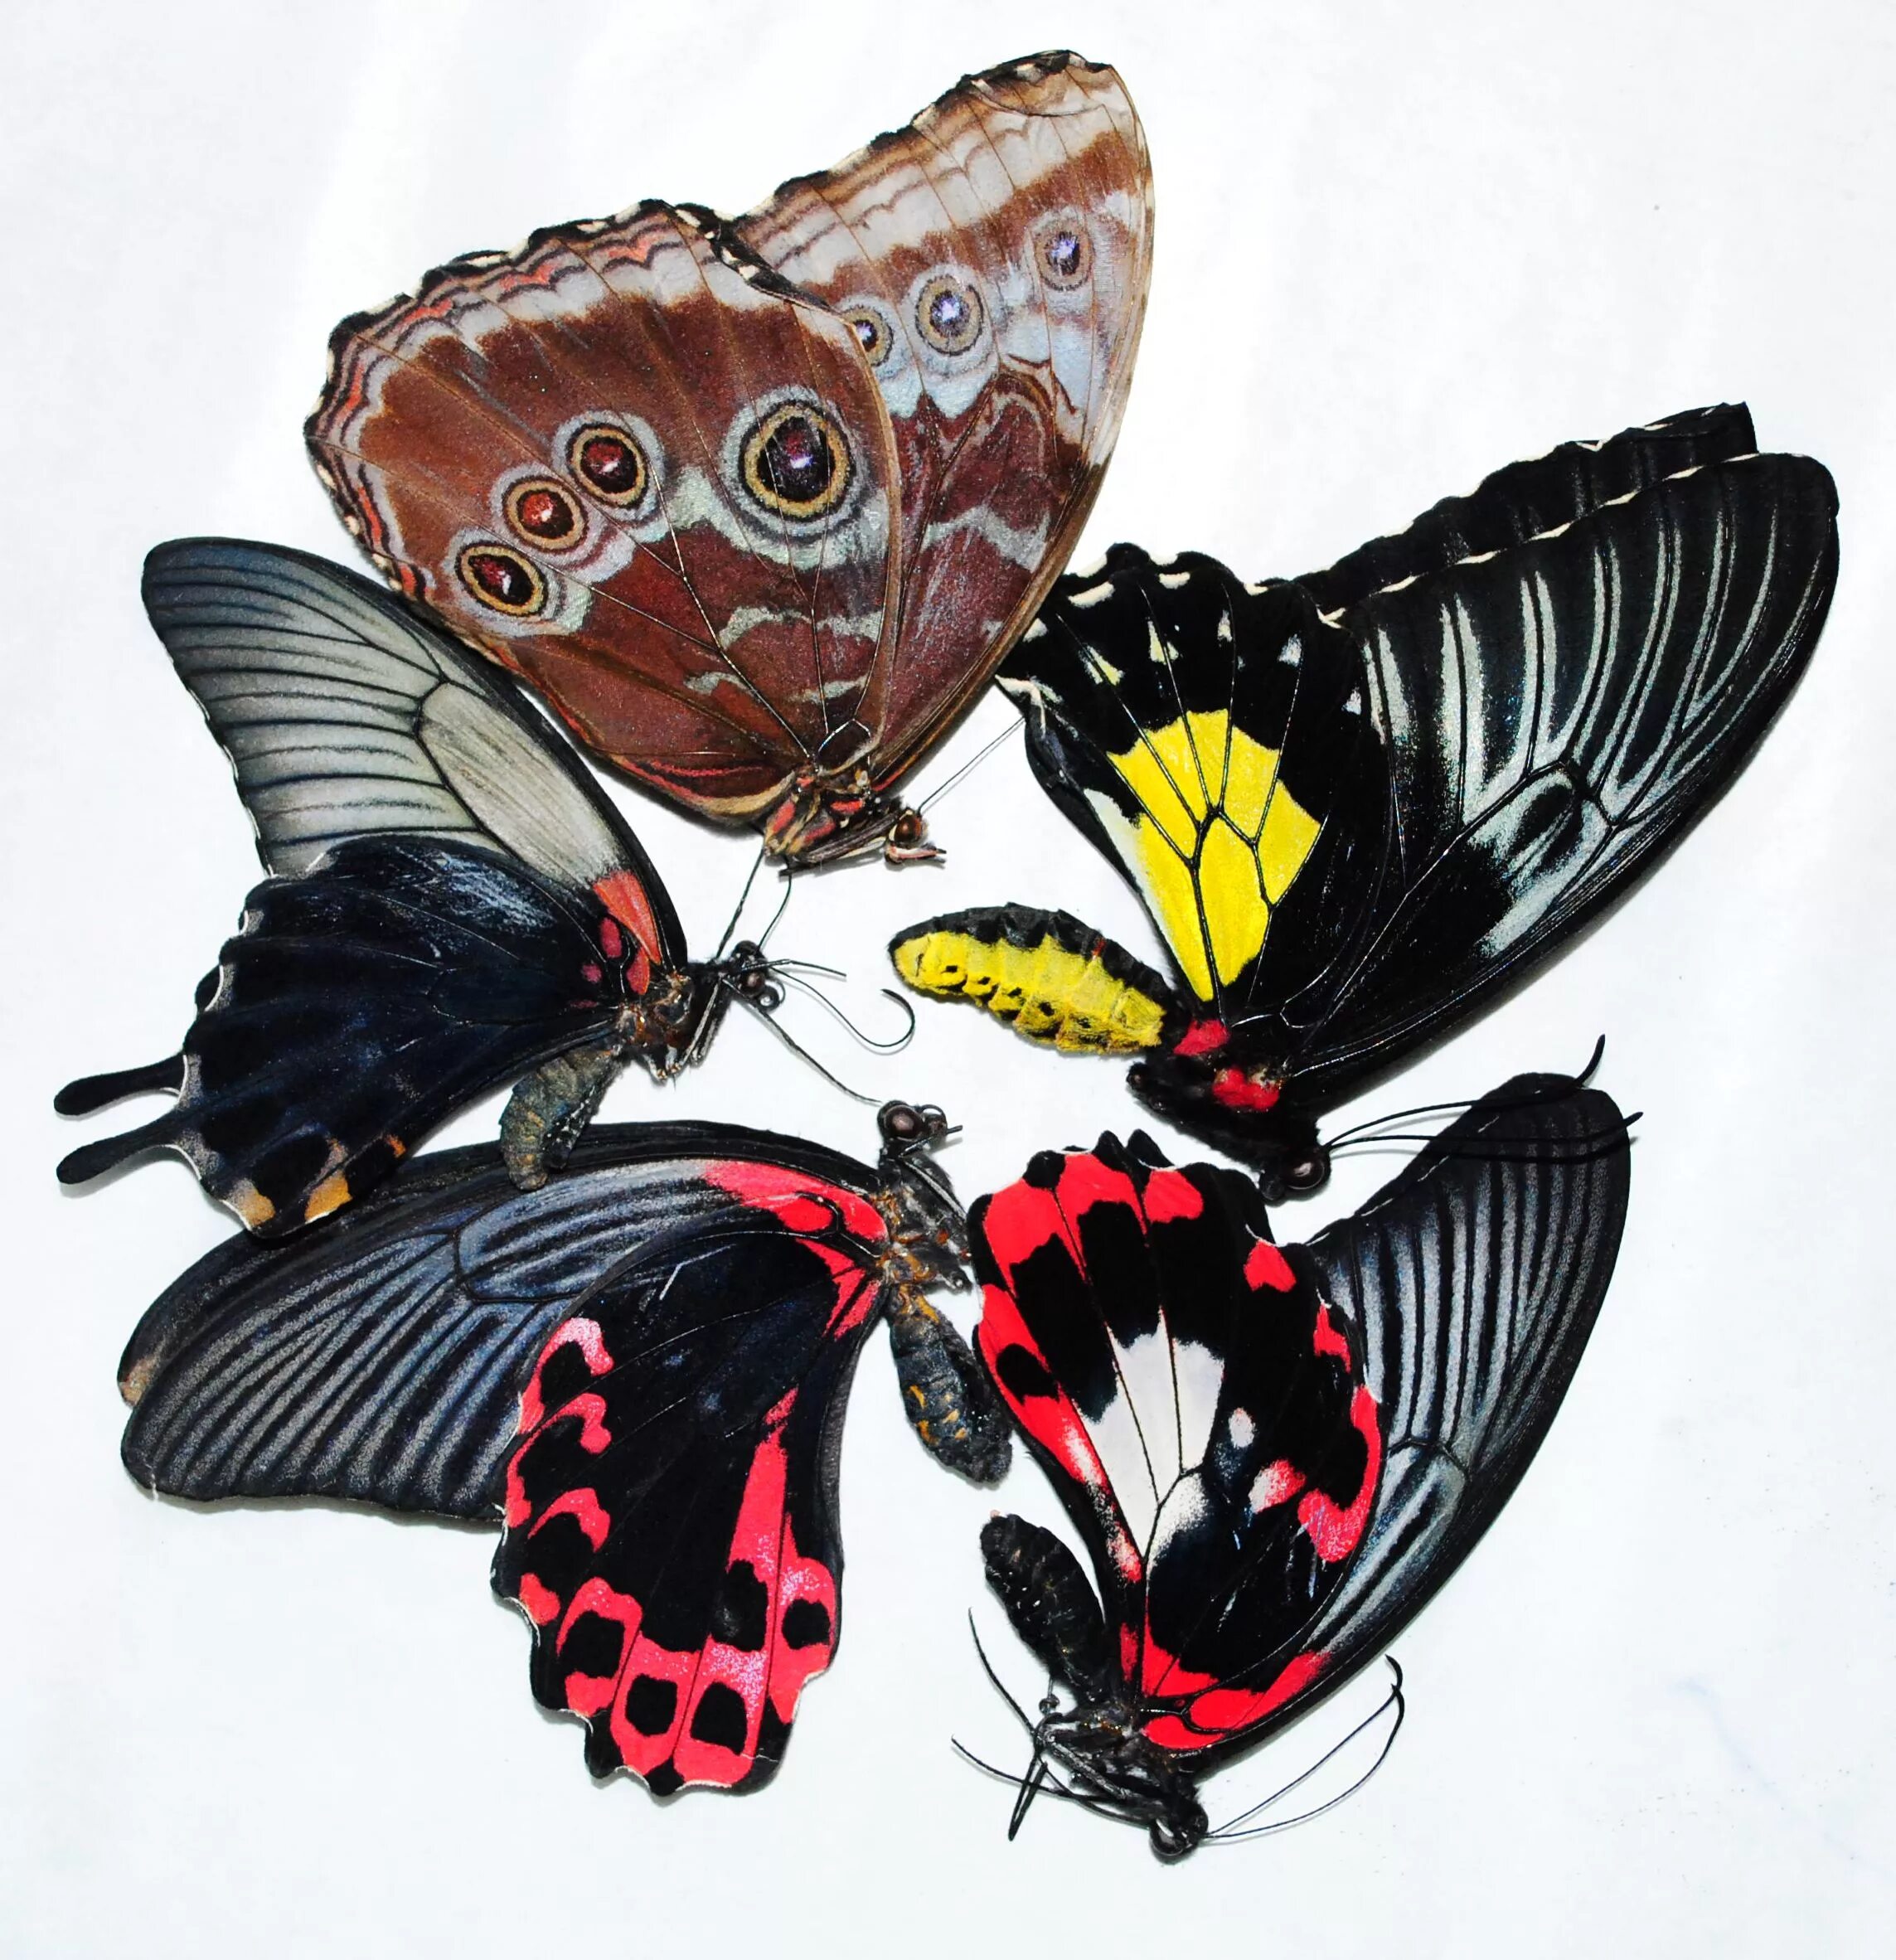 Купить бабочки с доставкой. Бабочка пипевин сваллоутейл. Засушенные бабочки. Бабочки композиция. Тропические бабочки засушенные.